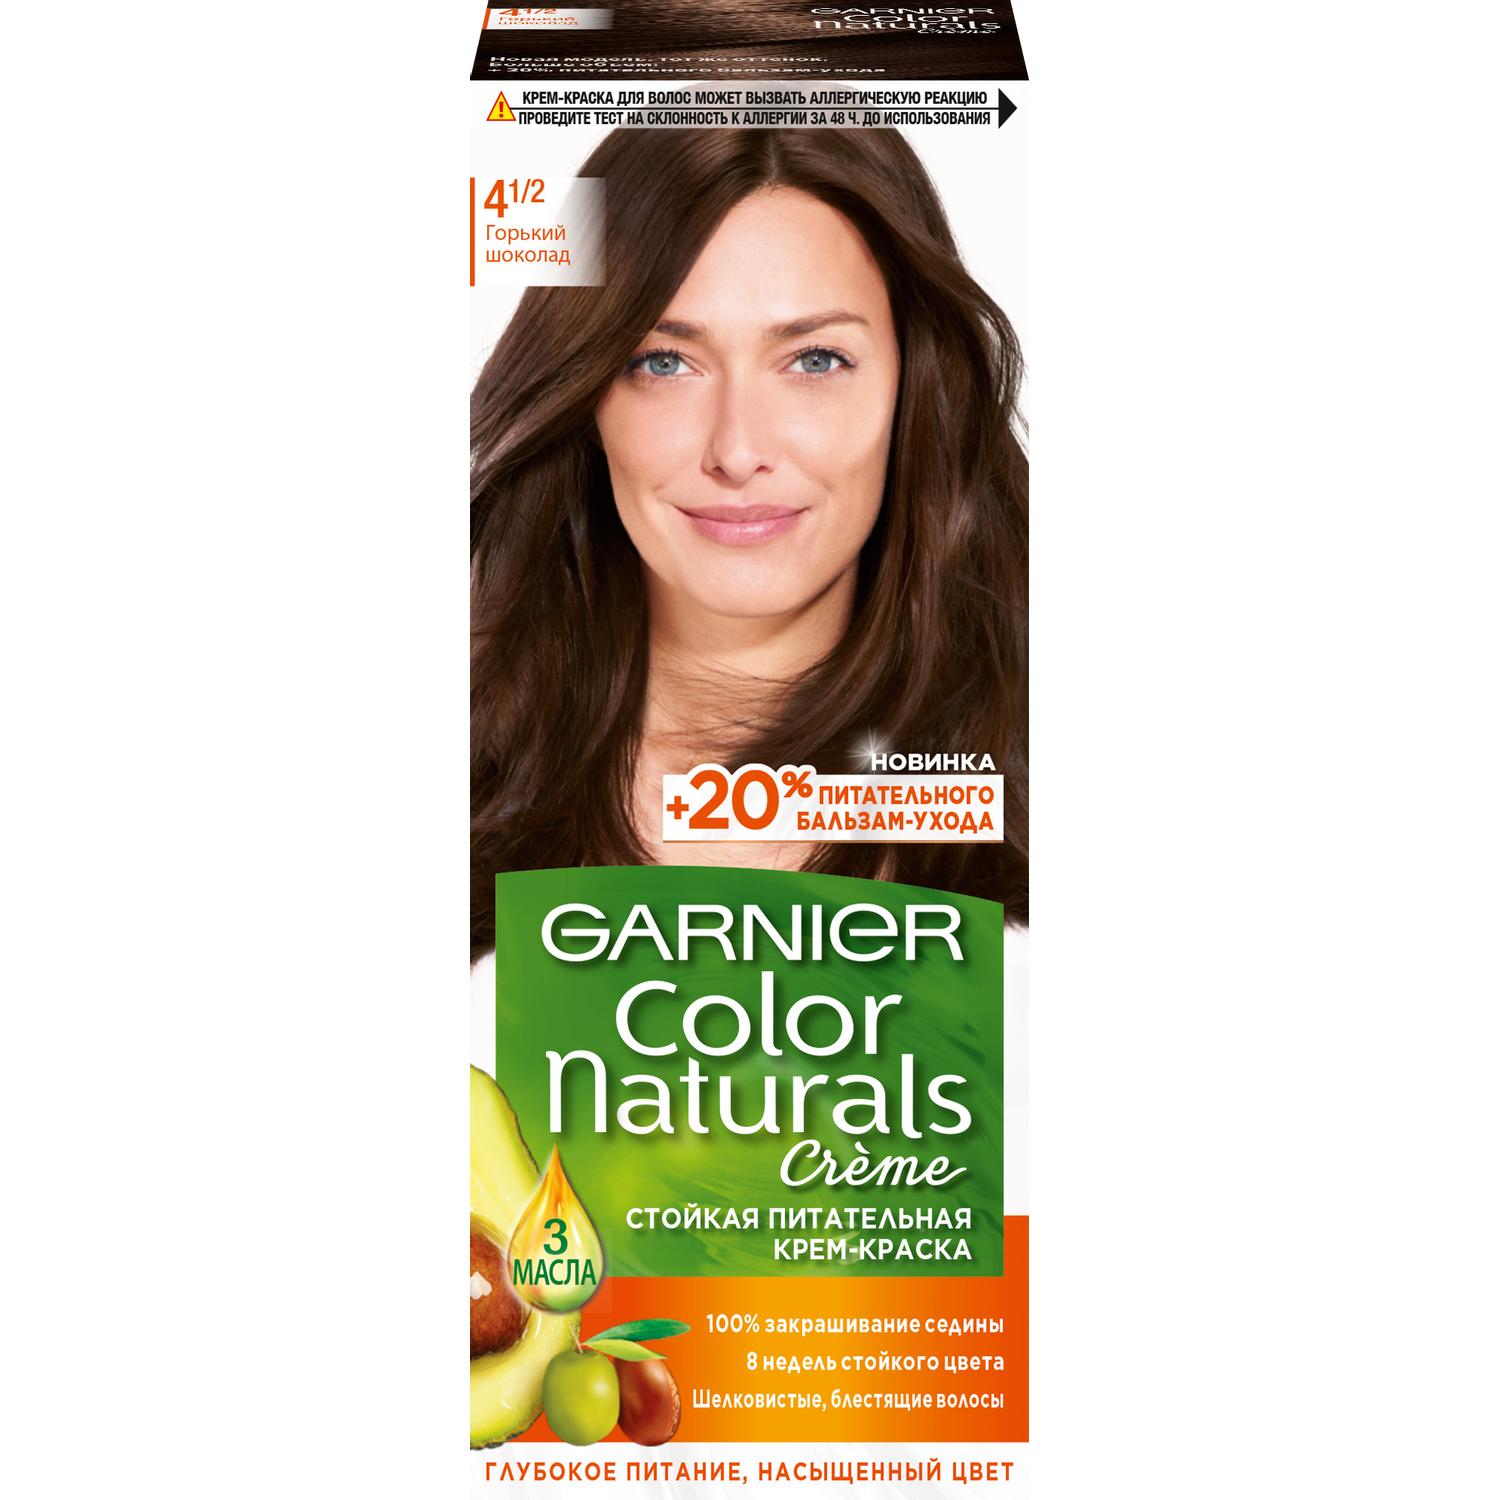 Крем-краска для волос Garnier Color Naturals 4.1/2 Горький Шоколад 110 мл крем паста для волос моделирующая суперсильной фиксации 85 мл